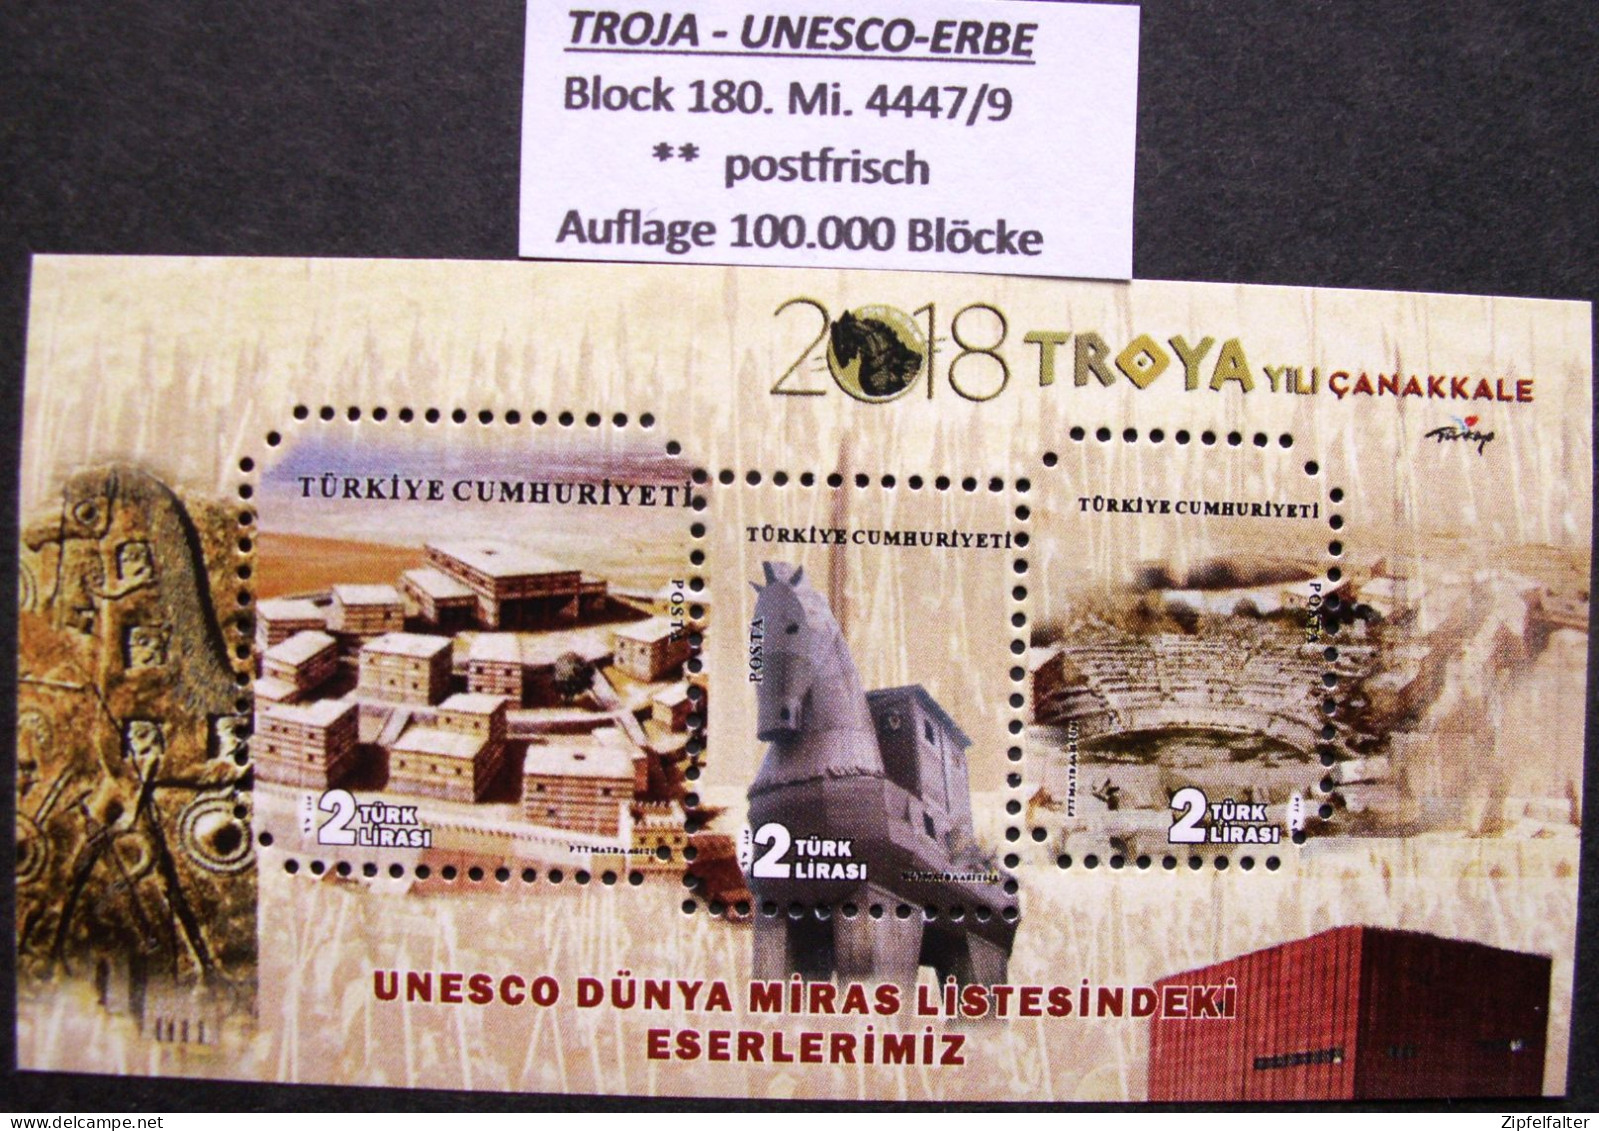 Große Sammlung Blöcke der Türkei von 1956-2020 mit vielen seltenen Kleinauflagen. 73 verschiedene Blöcke ** postfrisch.